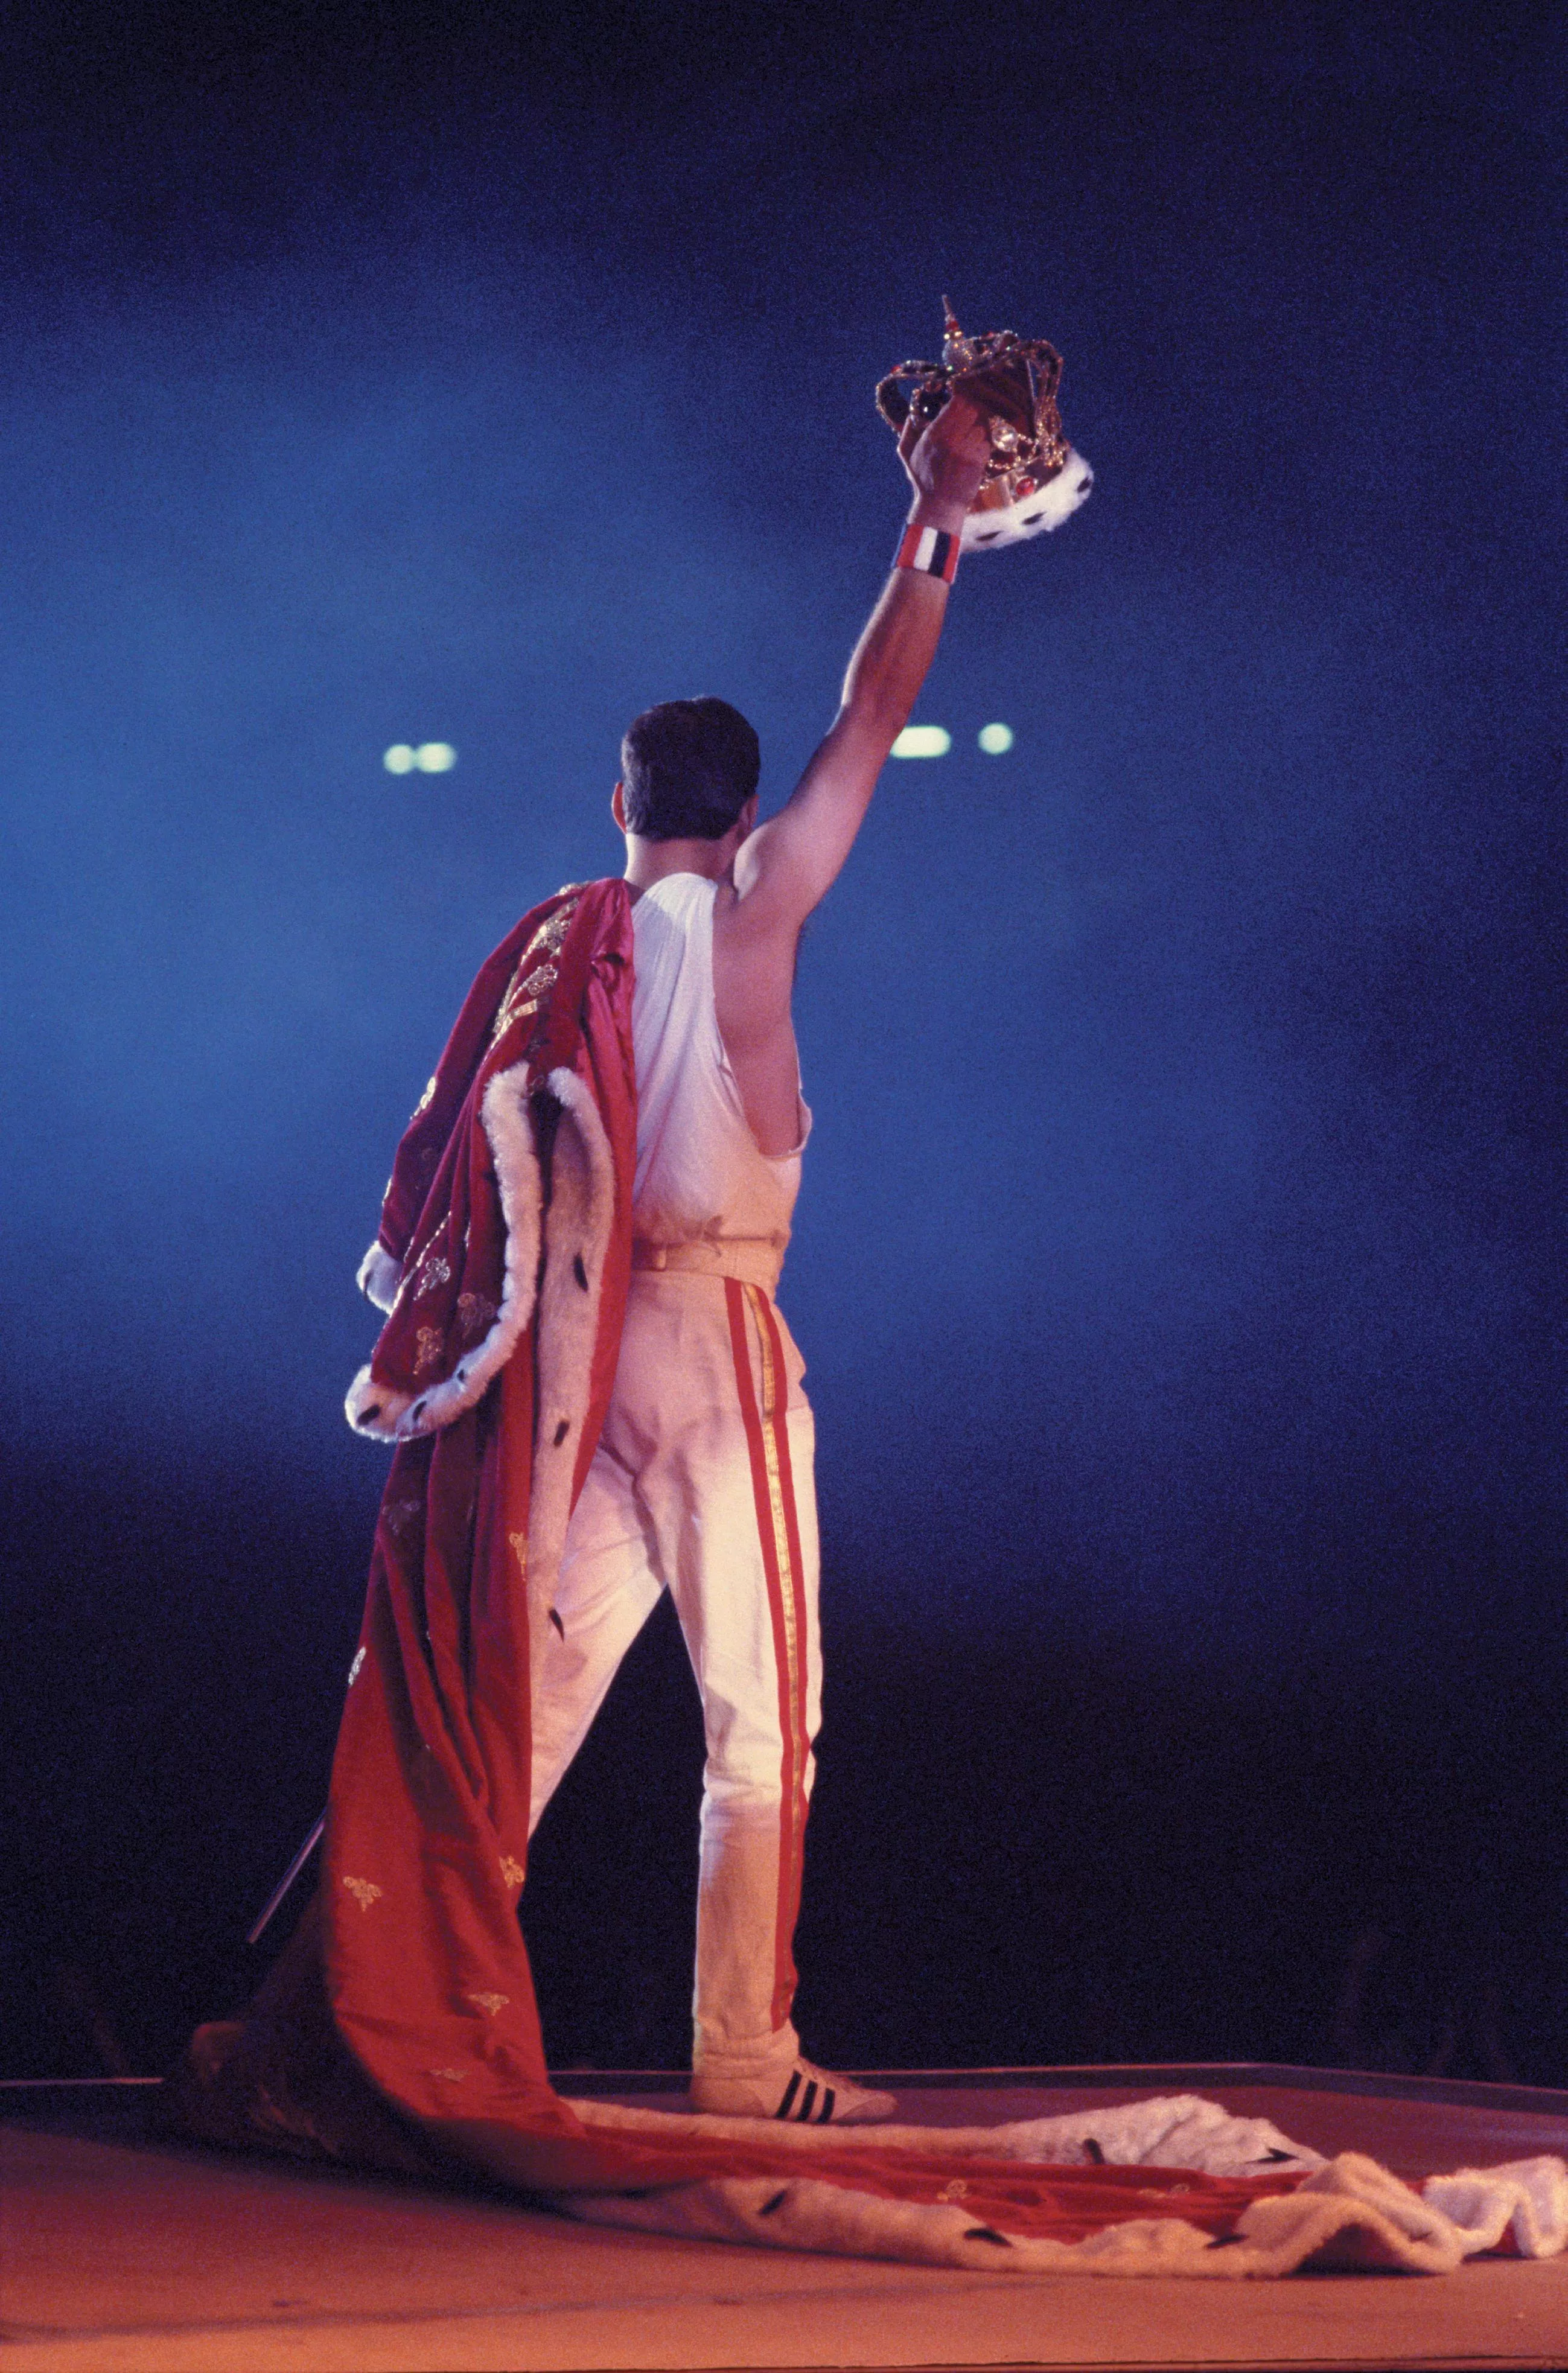 Freddie Mercurys anteckningsbok till salu